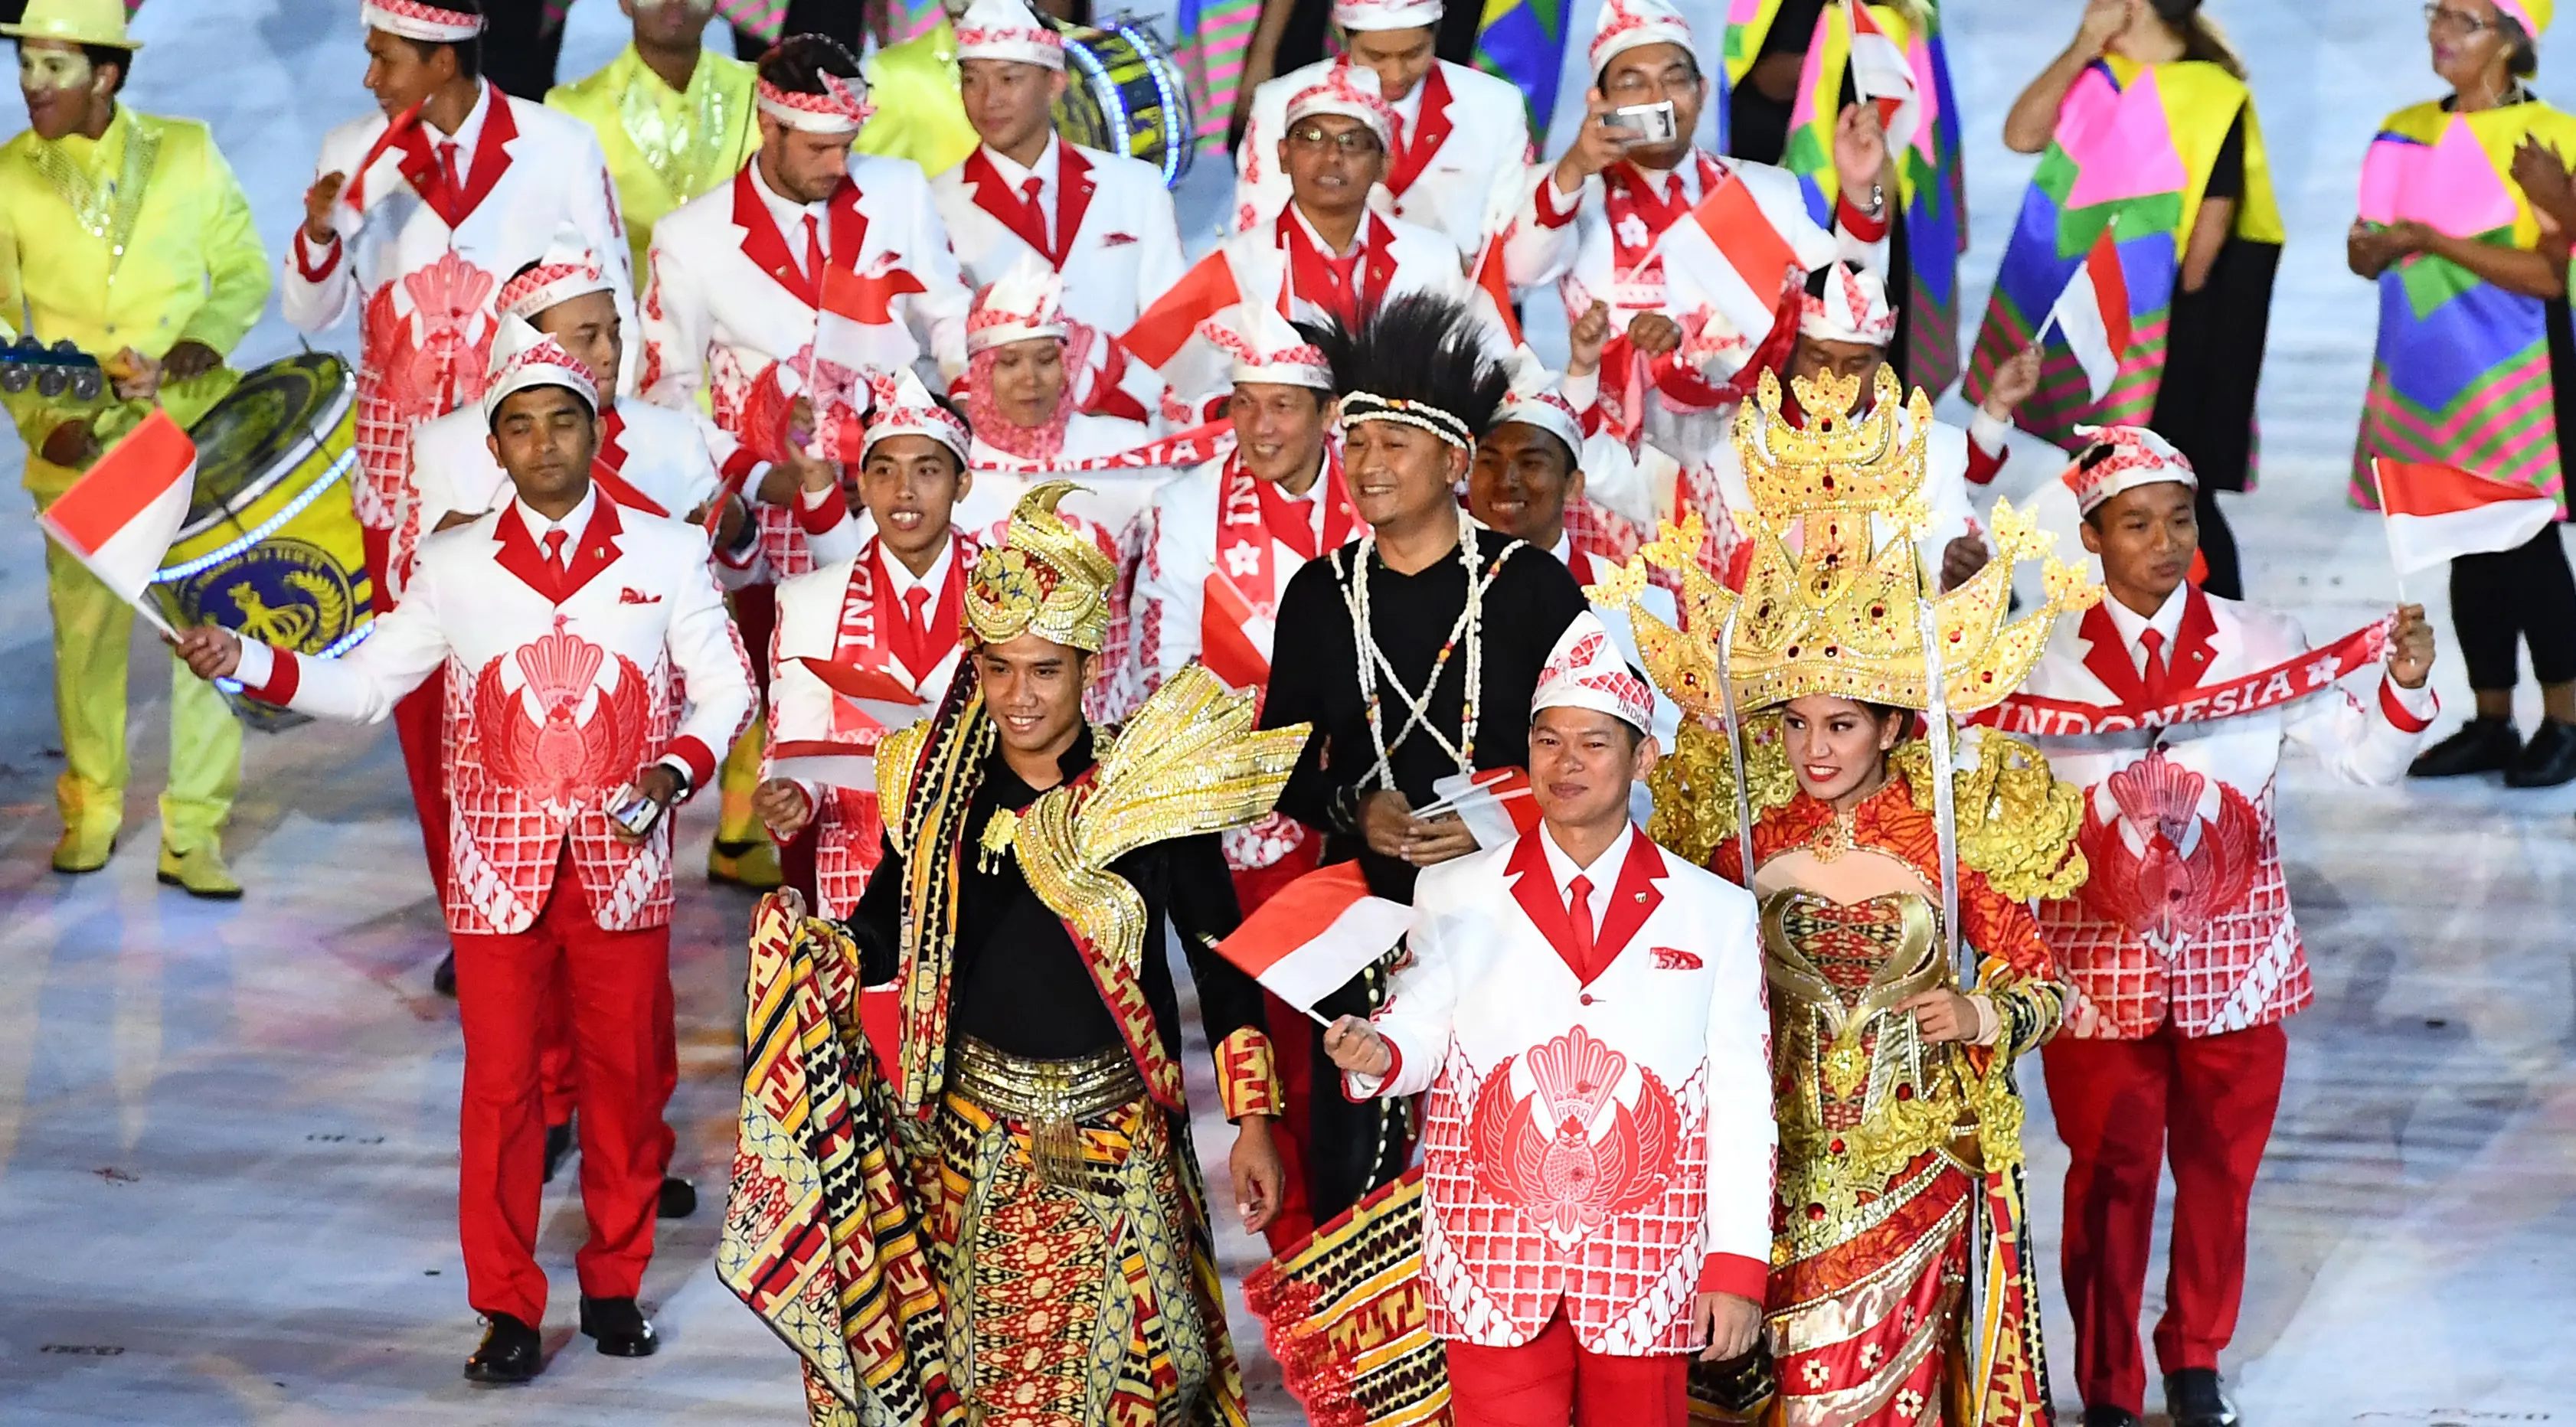 Kontingen atlet Indonesia saat mengikuti parade upacara pembukaan Olimpiade 2016 di Stadion Maracana, Rio de Janeiro, Brasil (5/8).Kostum yang digunakan para kontingen merupakan paduan jas dan batik. (FRANCK FIFE / AFP)